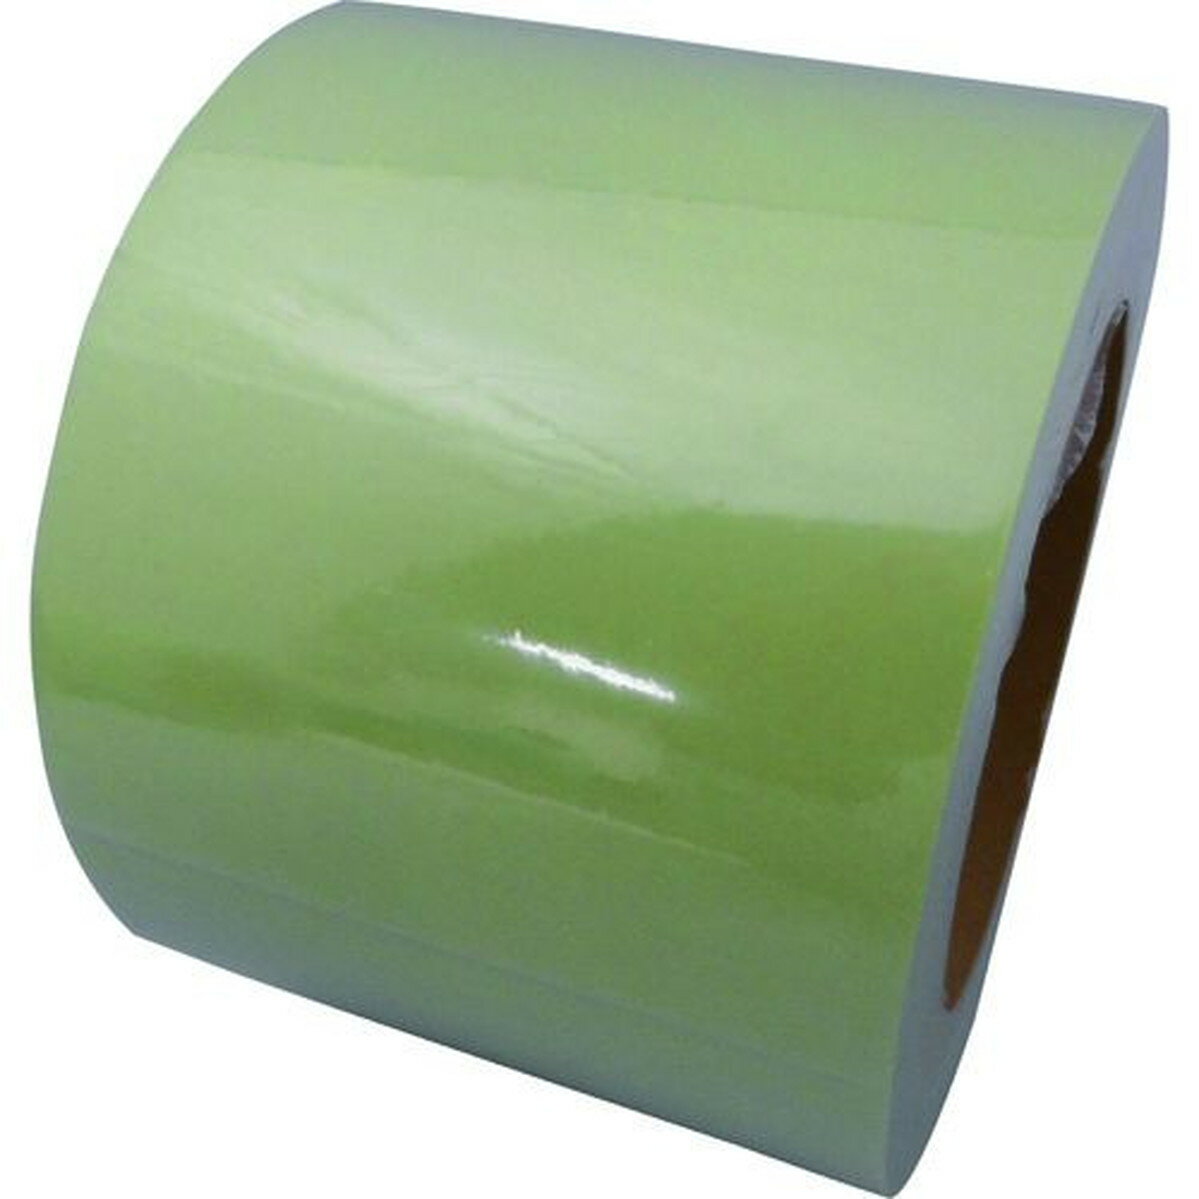 特長:●壁や床に貼ってあるテープやステッカーの保護に最適です。●蓄光テープやラインテープの上から貼ってもほとんど輝度は落ちません。 用途:●蓄光テープやラインテープの保護。 仕様:●色：透明●幅(mm)：75●厚さ(mm)：0.1●長さ(m)：10●粘着力(N/10mm)：13.3N/10mm 仕様2:●粘着力：13.3N/10mm 材質／仕上:●基材:塩化ビニール●粘着剤:アクリル系特長:●壁や床に貼ってあるテープやステッカーの保護に最適です。●蓄光テープやラインテープの上から貼ってもほとんど輝度は落ちません。 用途:●蓄光テープやラインテープの保護。 仕様:●色：透明●幅(mm)：75●厚さ(mm)：0.1●長さ(m)：10●粘着力(N/10mm)：13.3N/10mm 仕様2:●粘着力：13.3N/10mm 材質／仕上:●基材:塩化ビニール●粘着剤:アクリル系